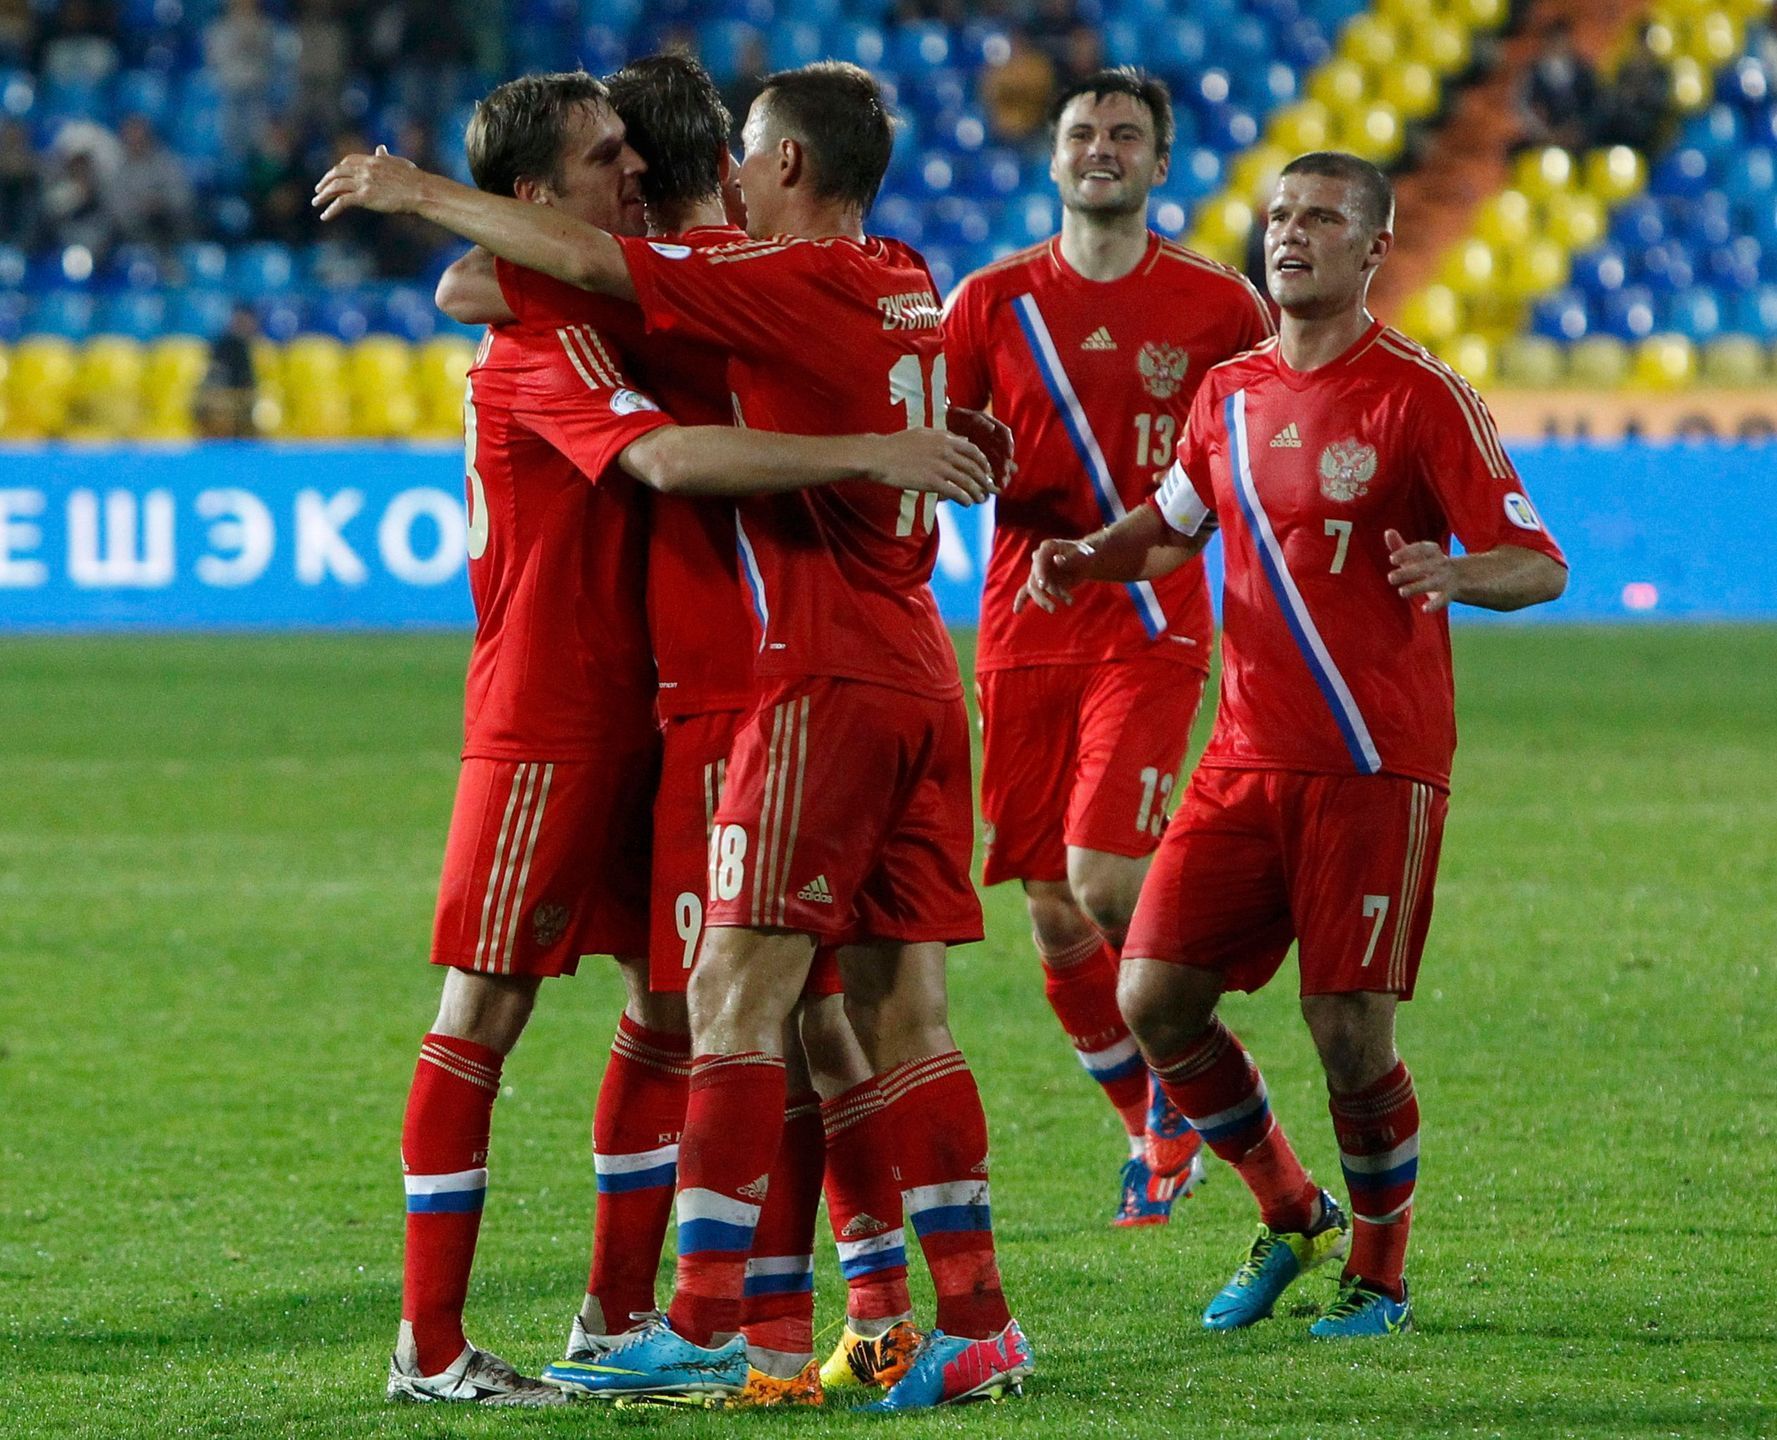 Rusové slaví gól proti Lucembursku